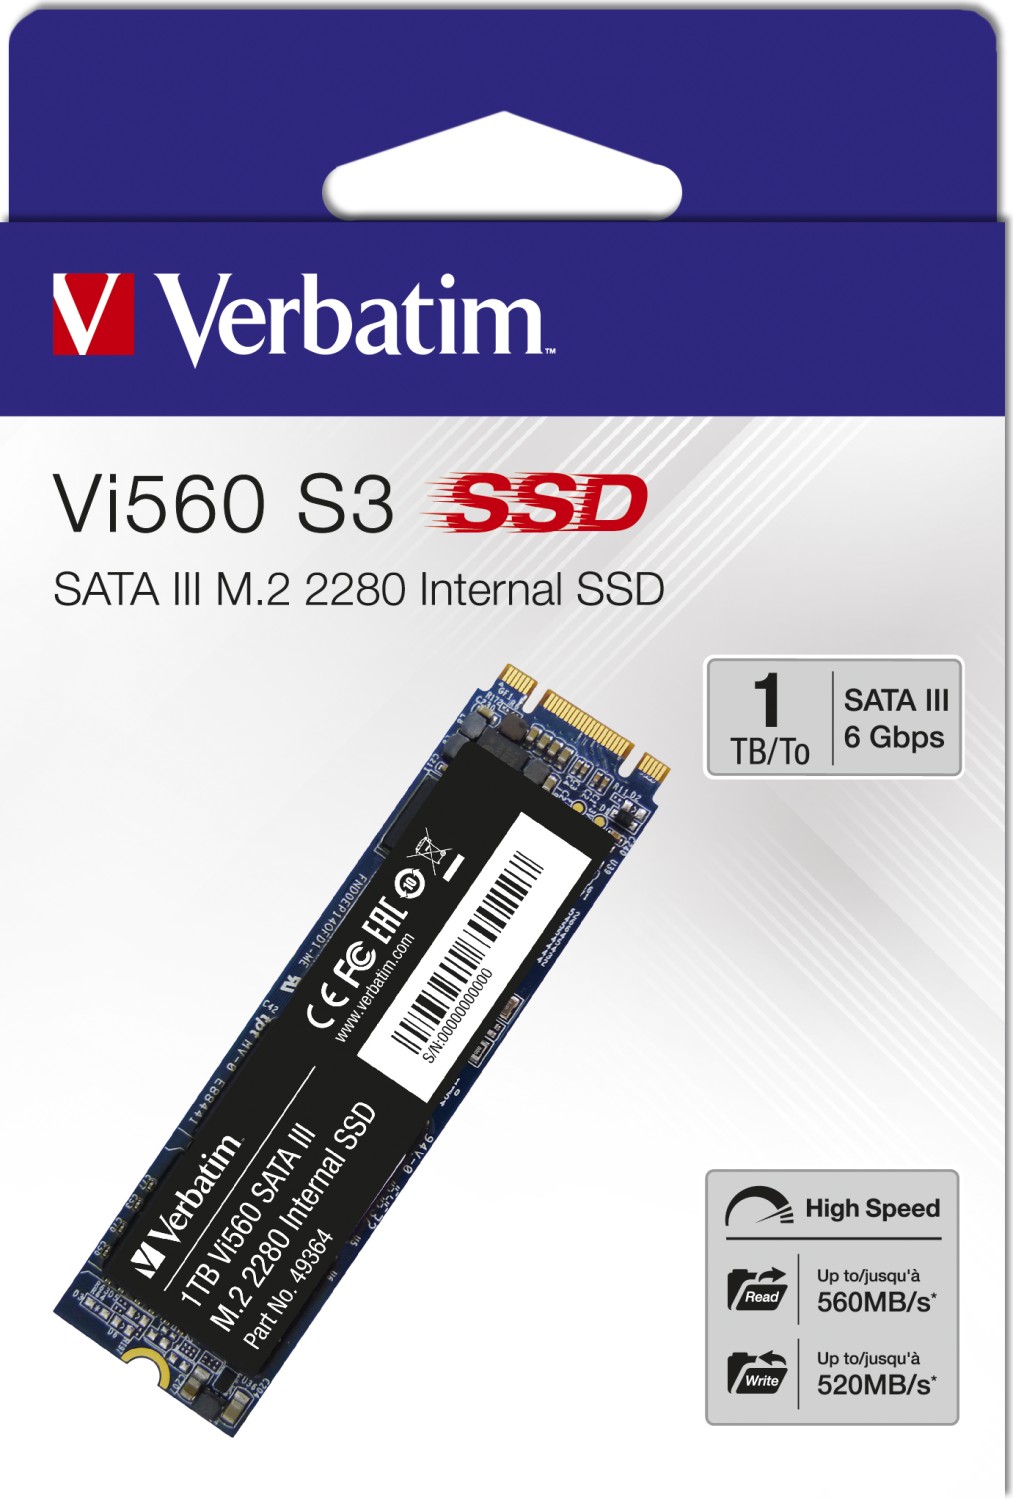 Verbatim Vi560 S3 56,58 (2024) | 1TB SSD € Deutschland ab Geizhals Preisvergleich